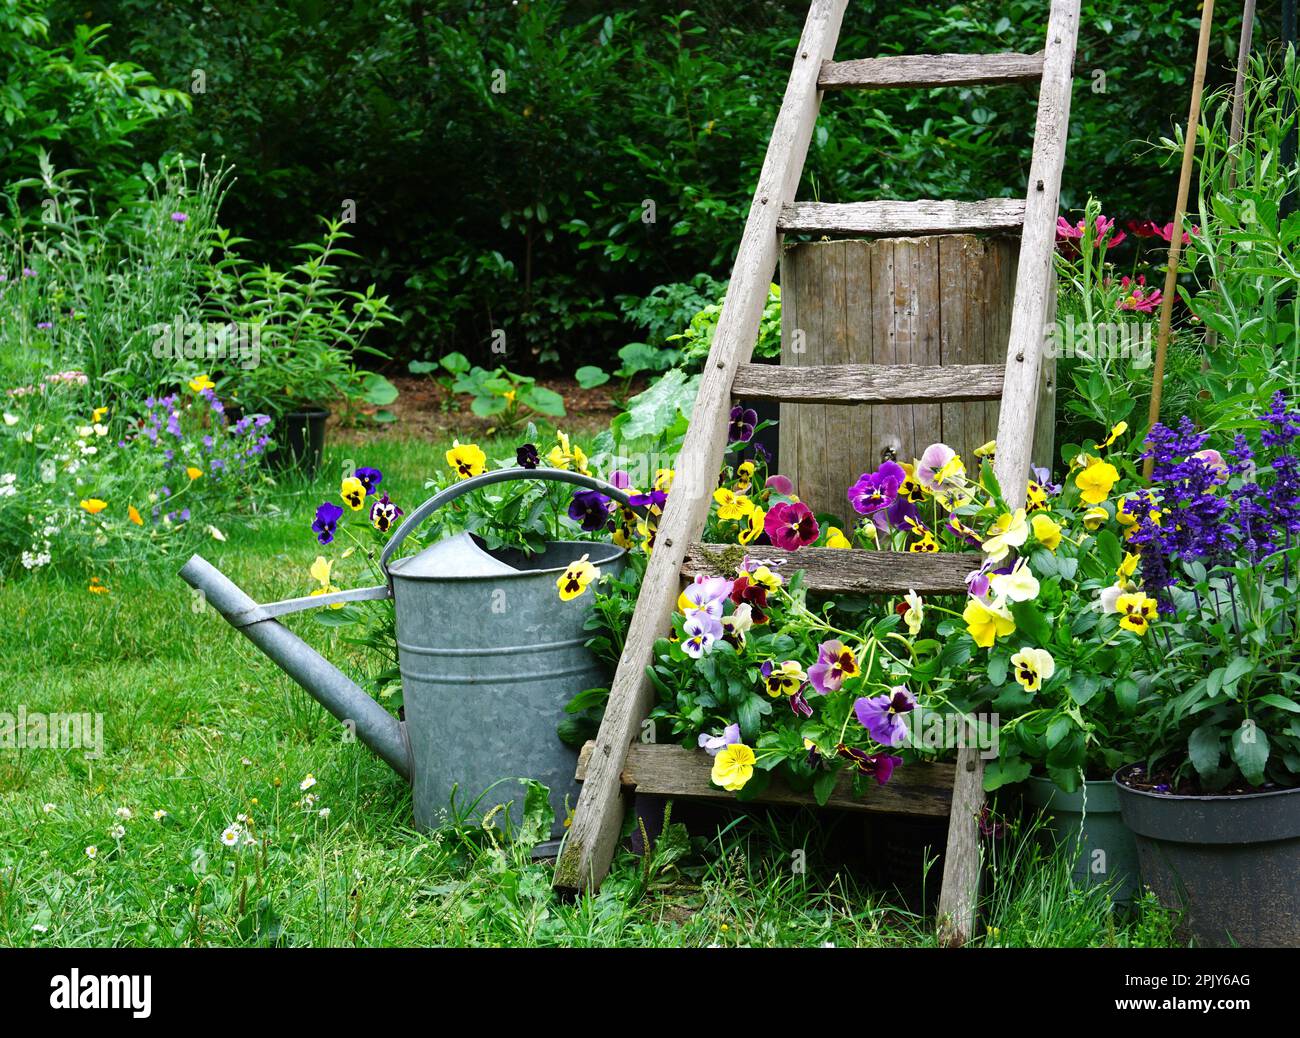 Hierbas silvestres y flores de campo con regadera de hierro. English cottage estilo gardening picture.Gardening concepto de un jardín rural.Good para insectos. Foto de stock